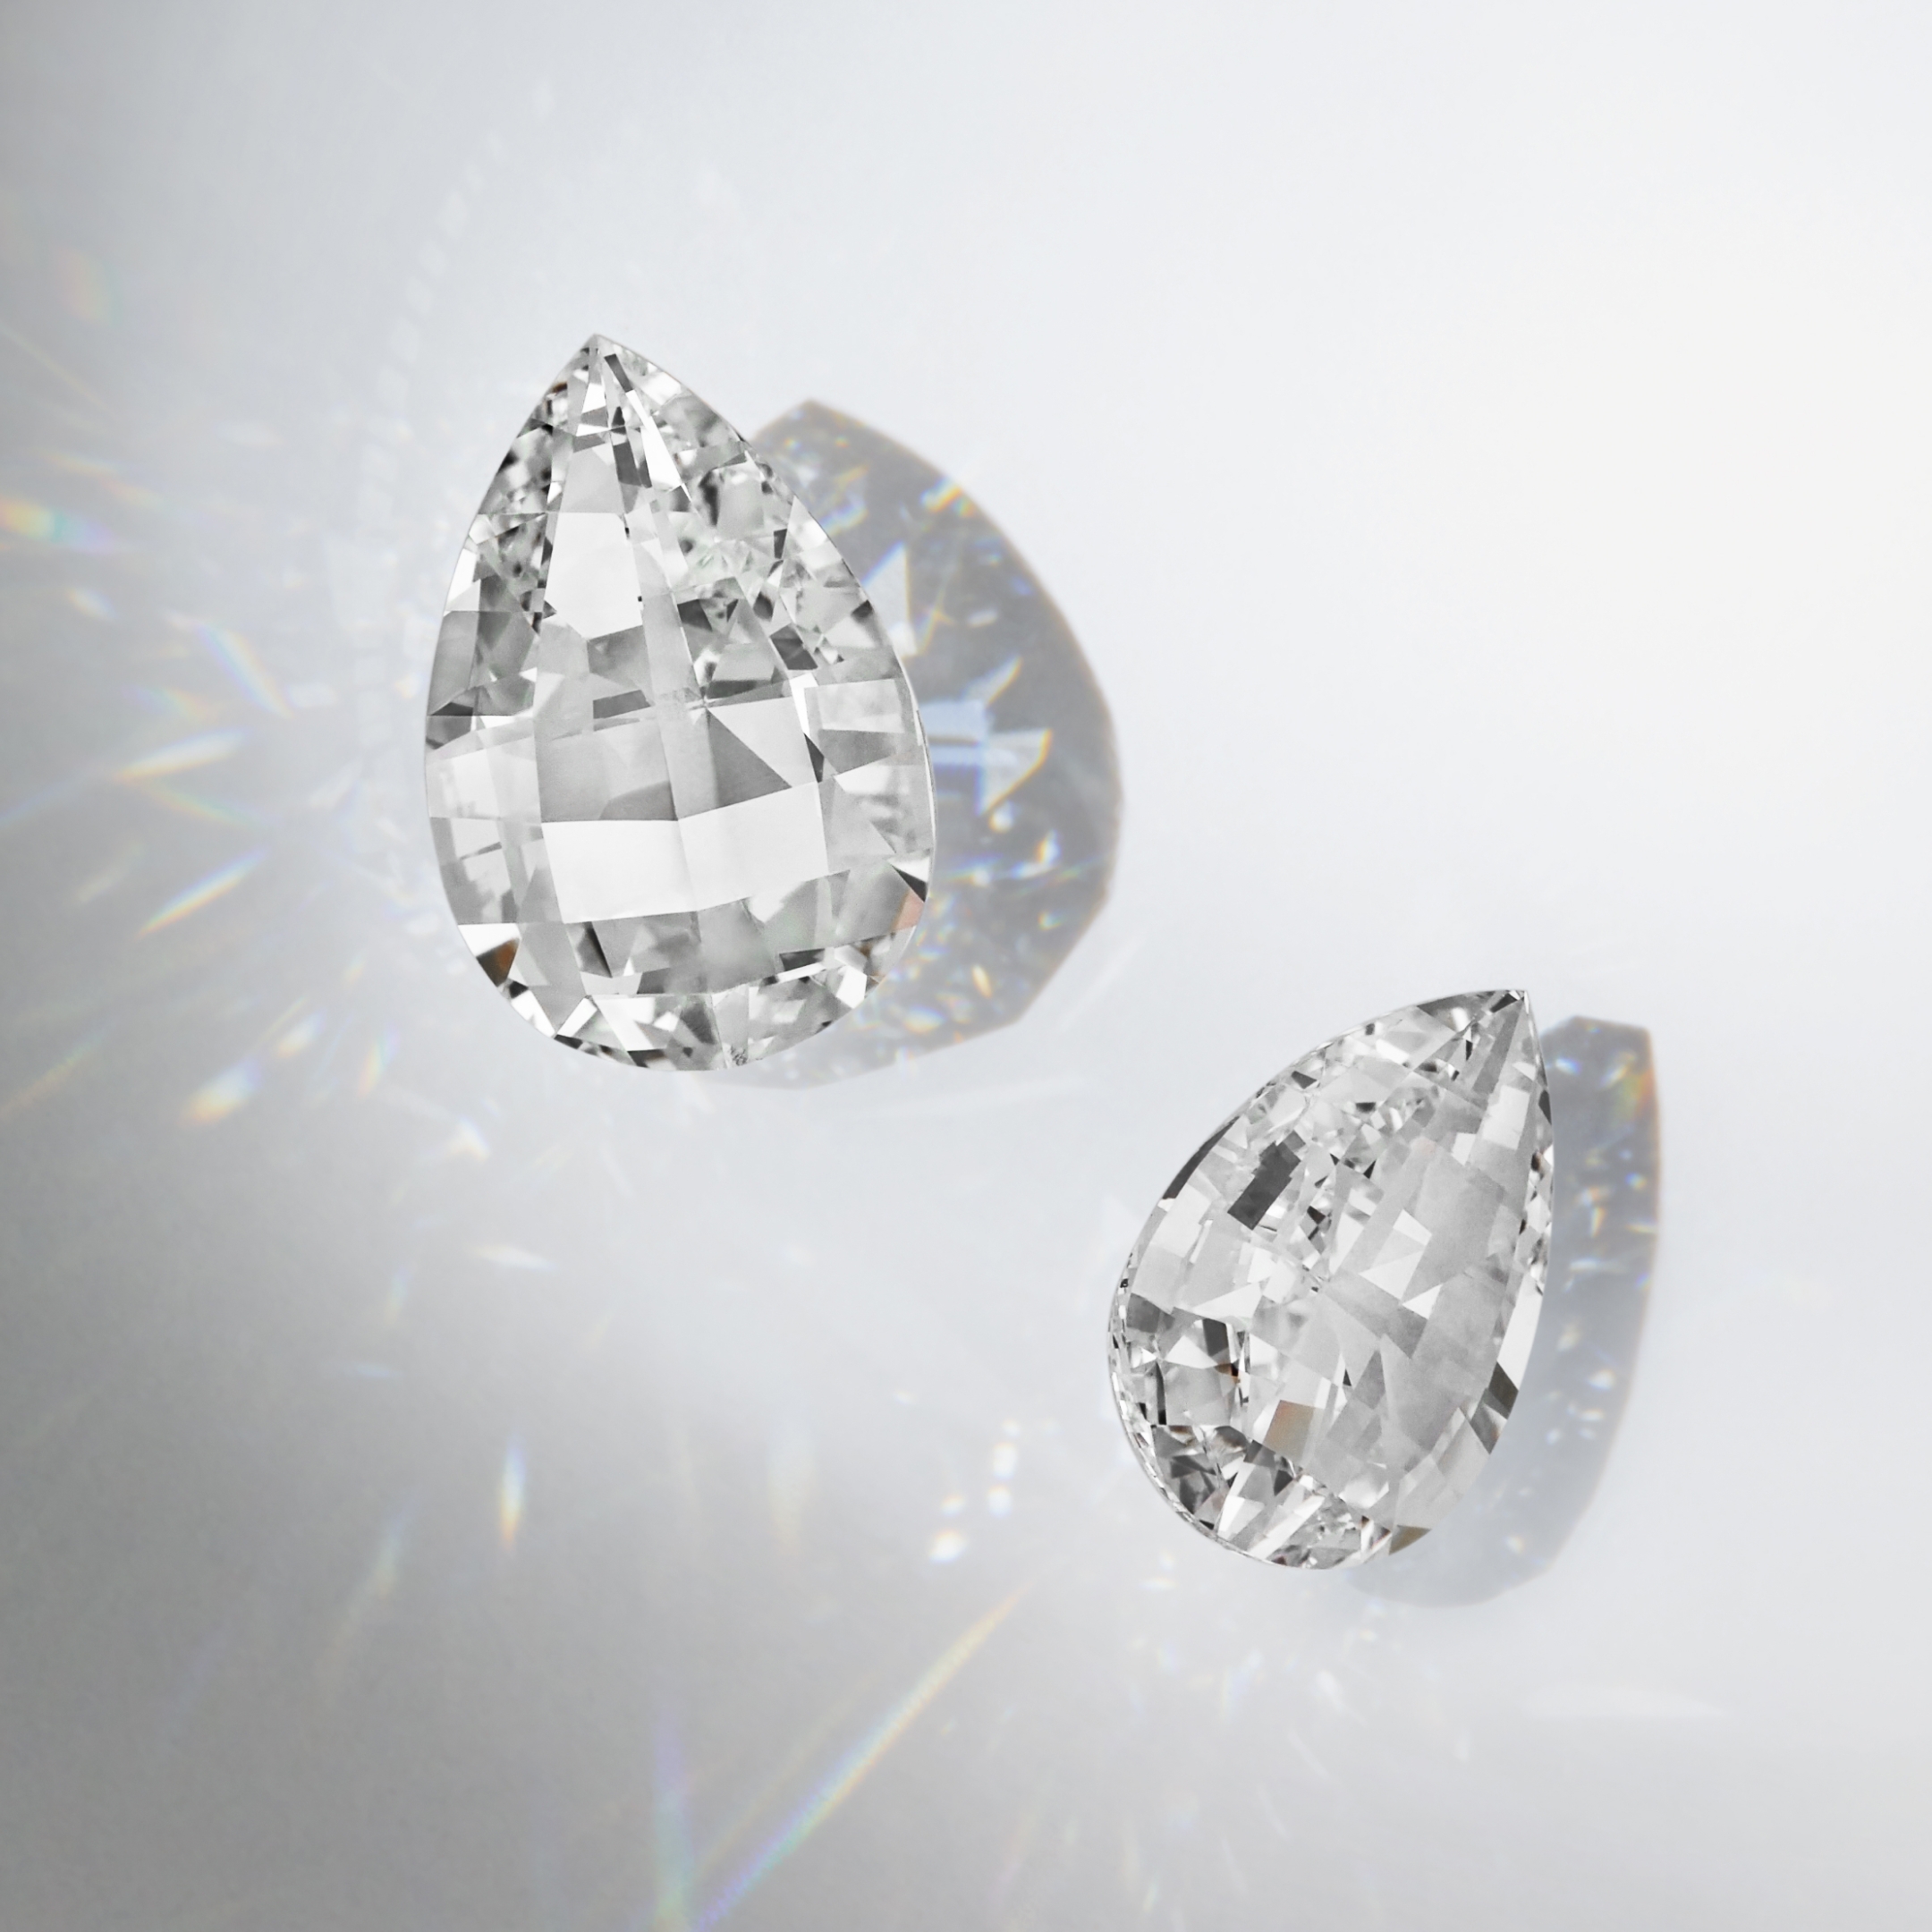 Les diamants de tailles signature et brevetés de la Maison de joaillerie unsaid